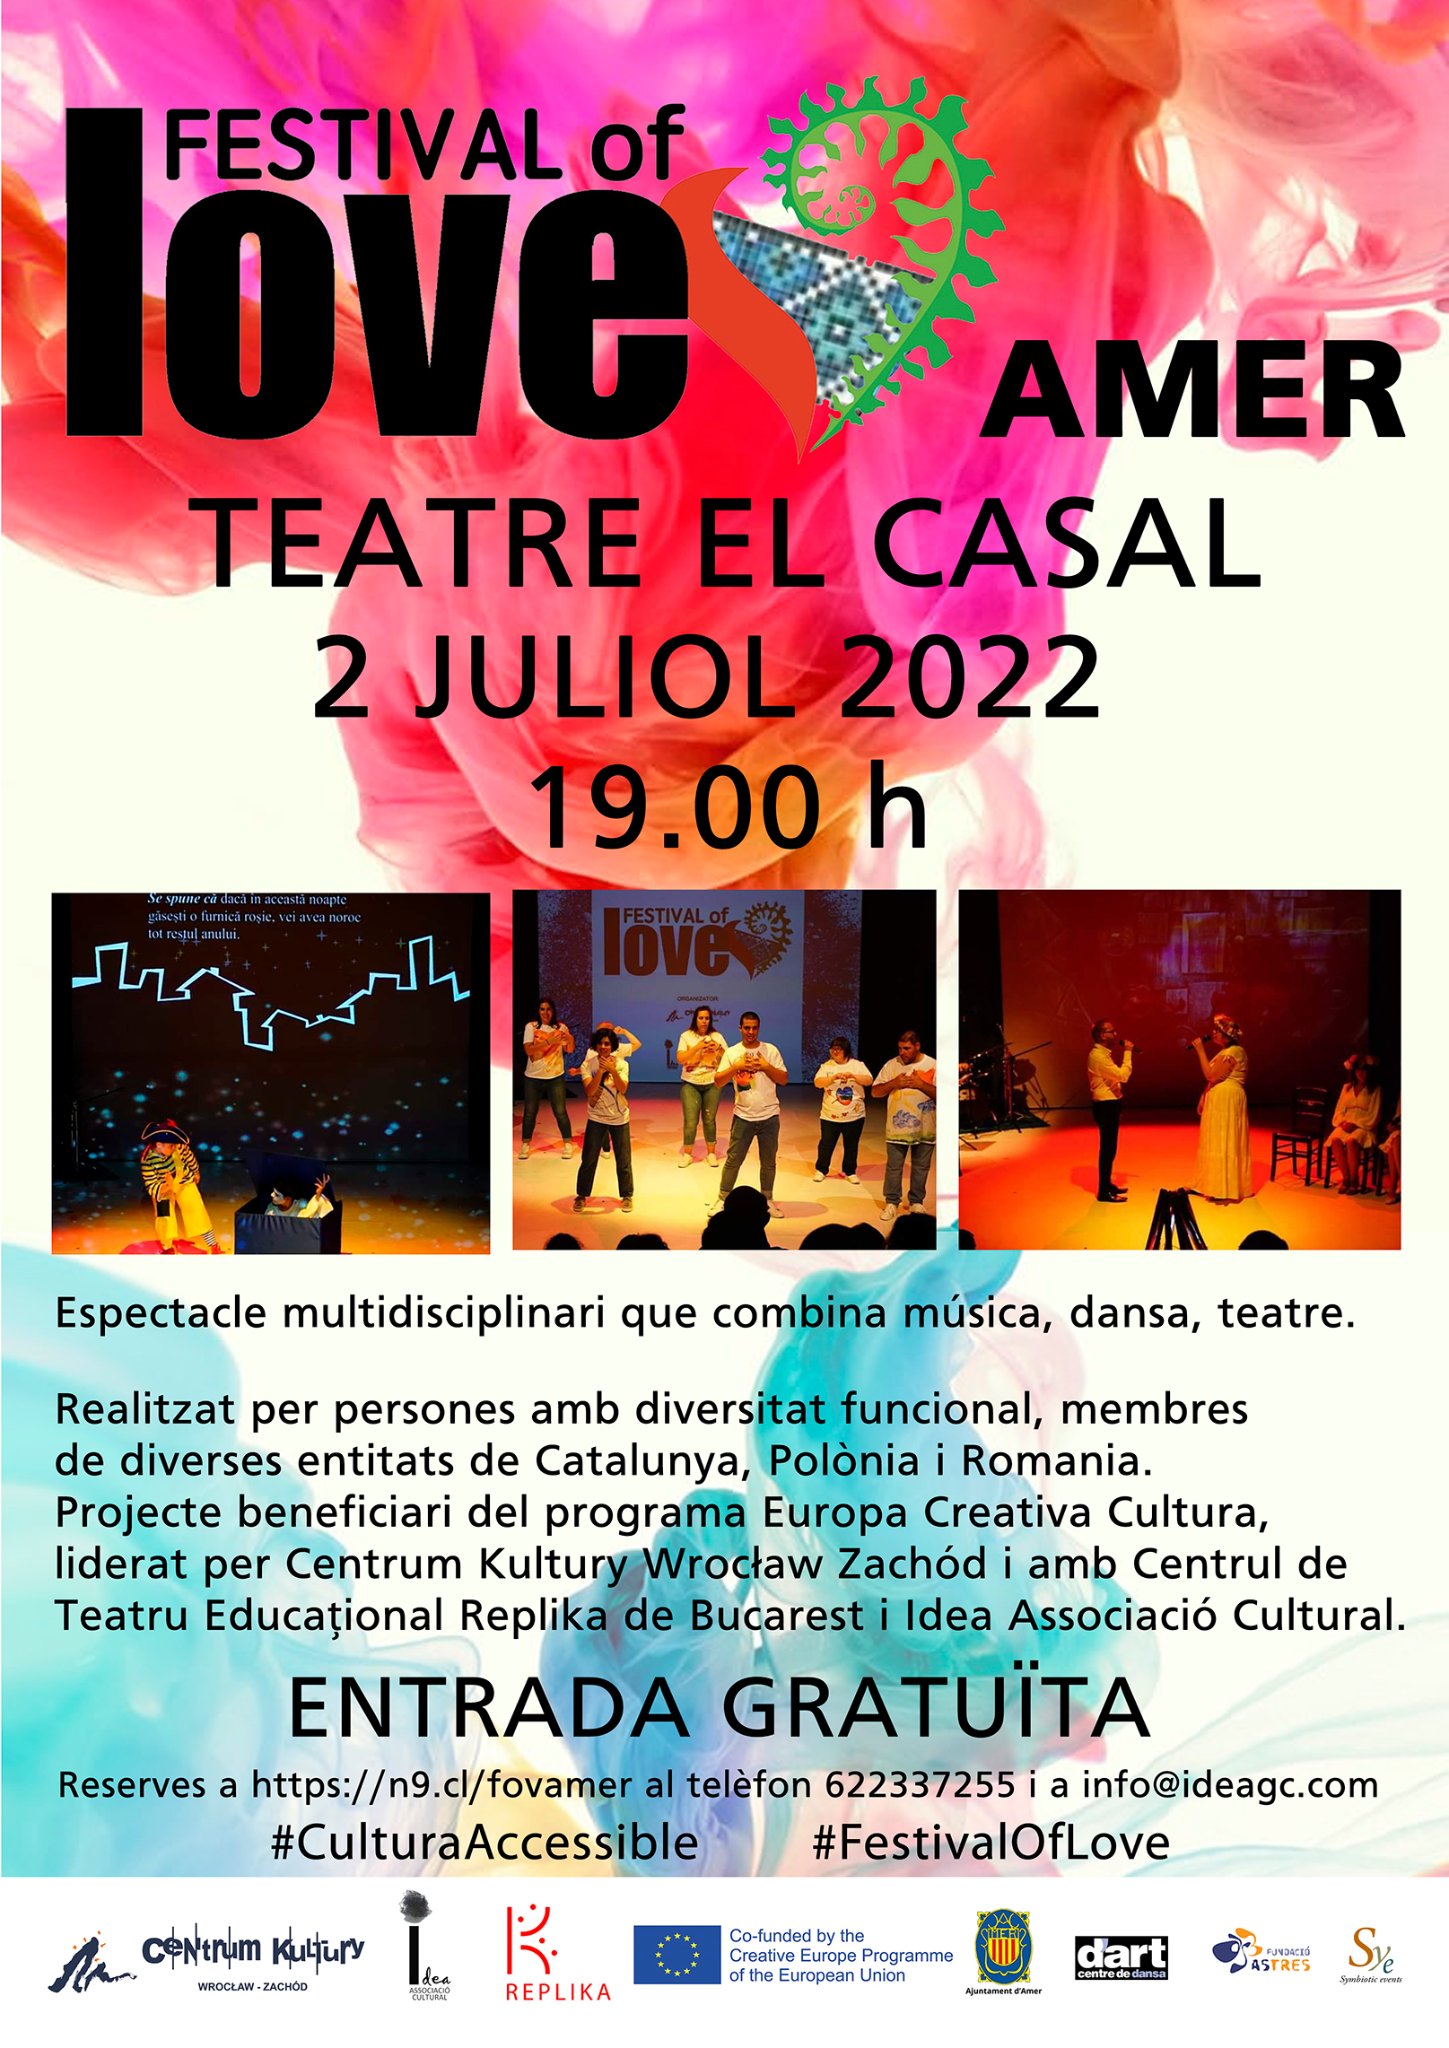 Plakat informujący o widowisku Festival of Love, które odbędzie się w hiszpanii 2 lipca 2022 roku w Amer.